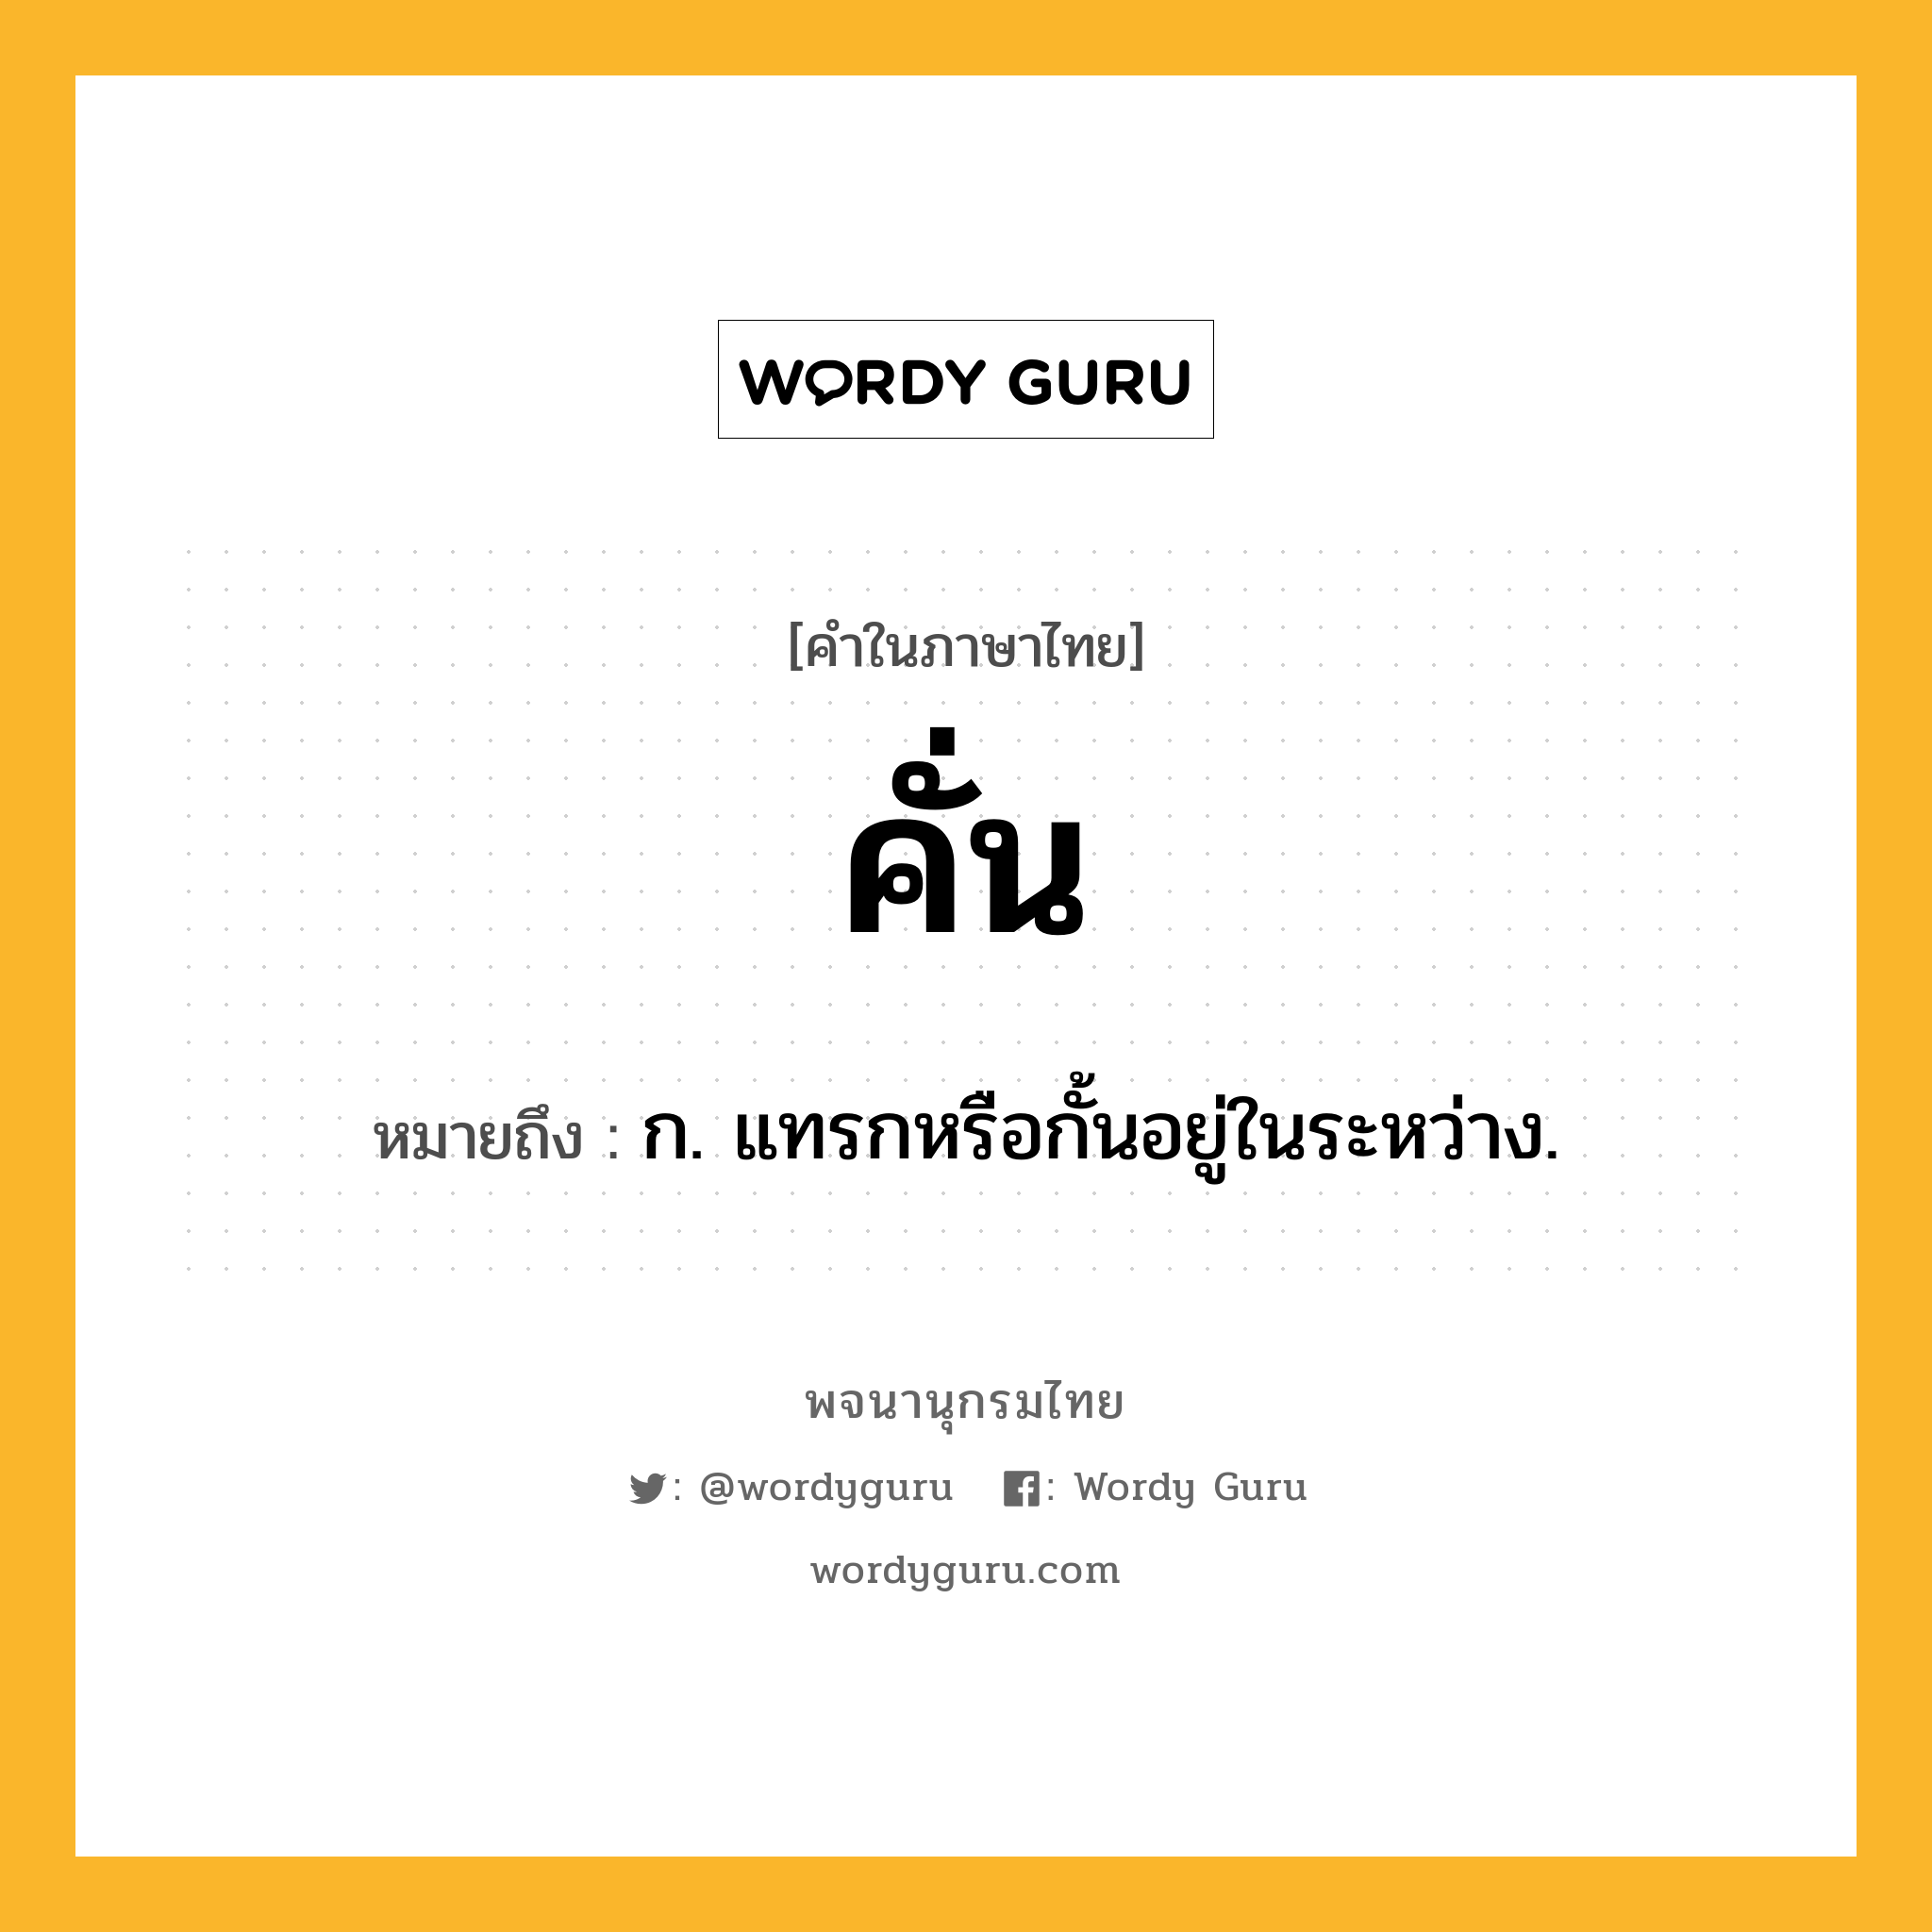 คั่น หมายถึงอะไร?, คำในภาษาไทย คั่น หมายถึง ก. แทรกหรือกั้นอยู่ในระหว่าง.